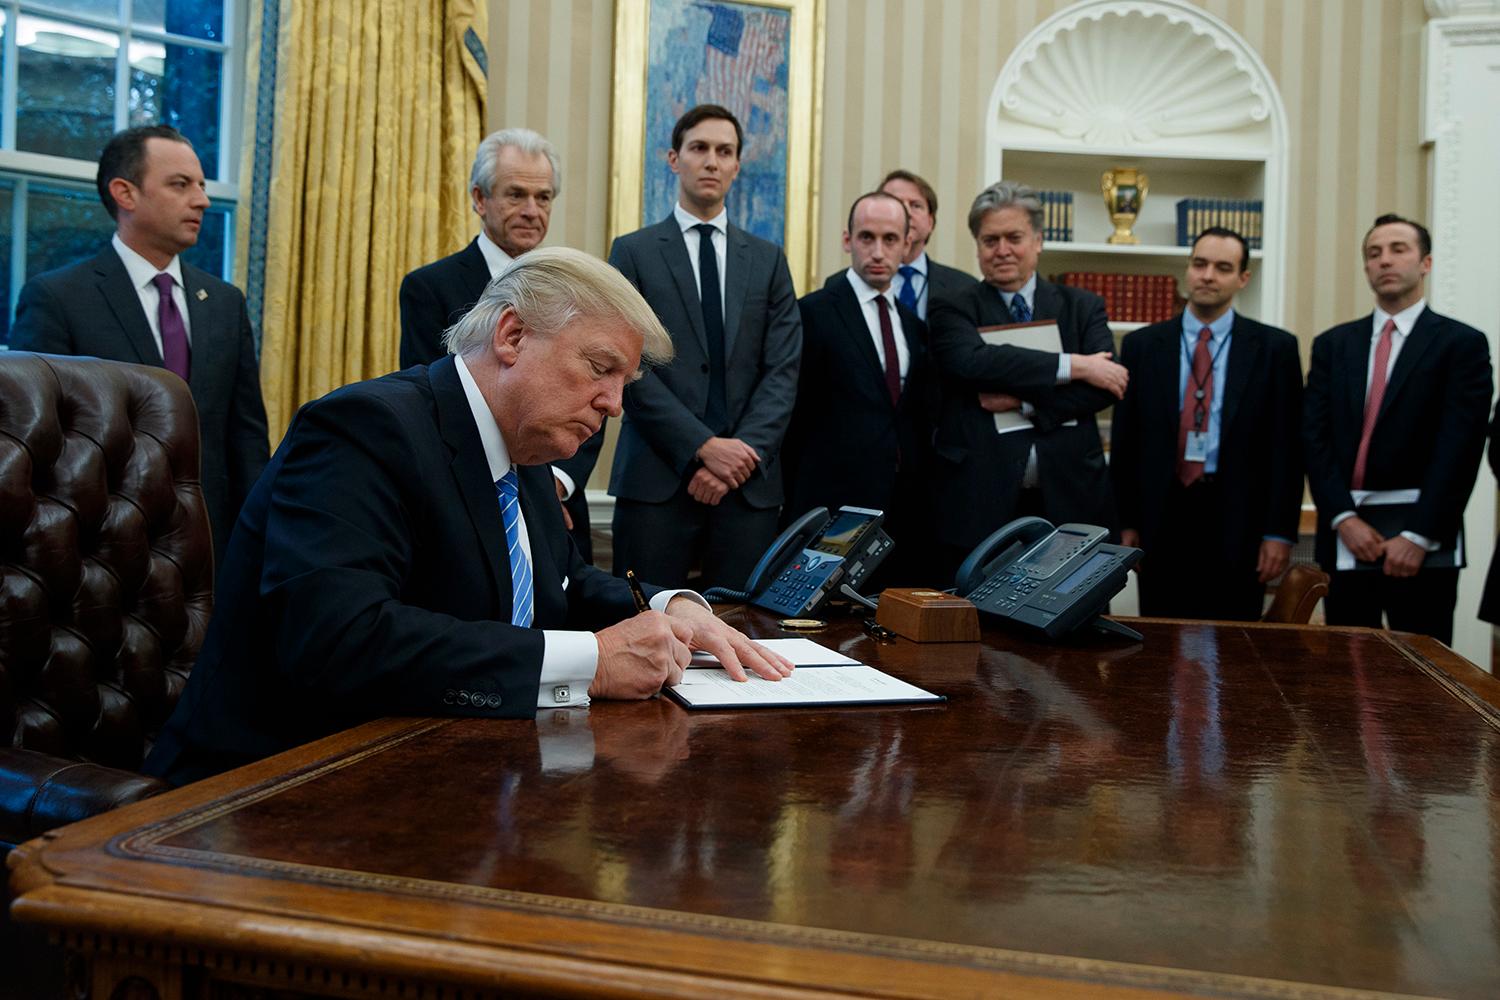 Här syns Banon som nummer tre från höger när Trump skriver en av sina presidentordrar.